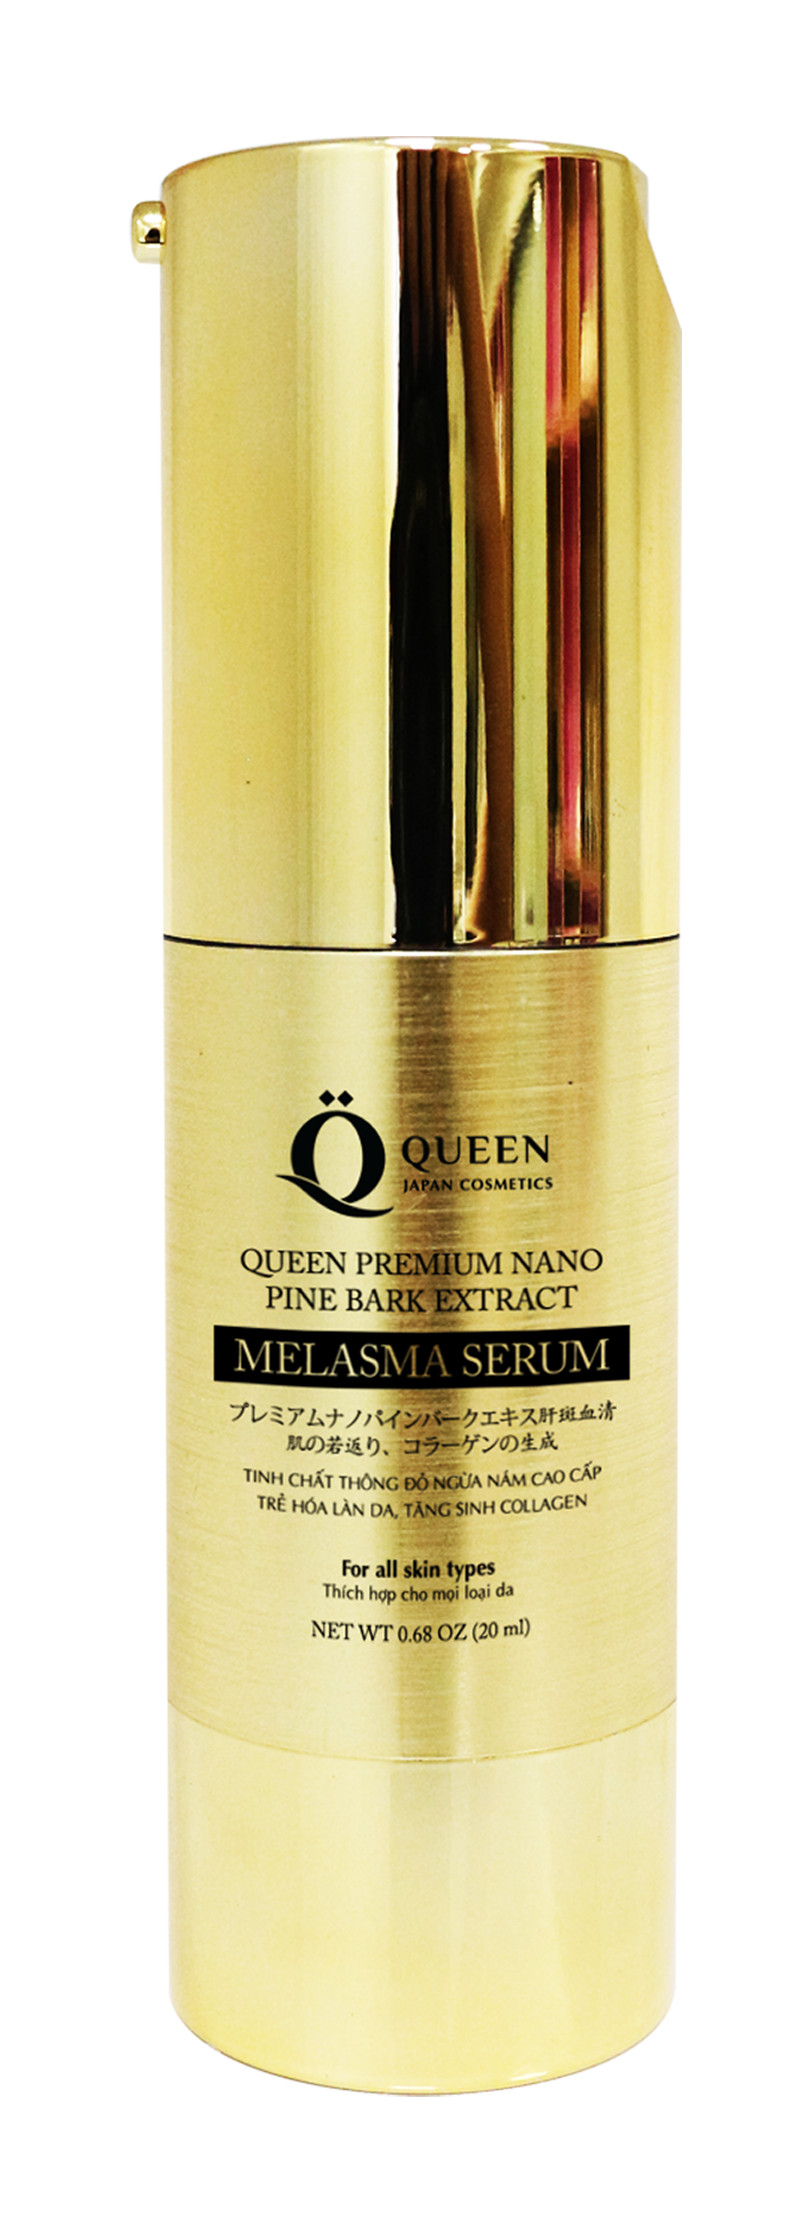 Bộ sản phẩm ngừa nám dưỡng trắng da chăm sóc da toàn diện cao cấp Nhật Bản Queen Japan Cosmetics